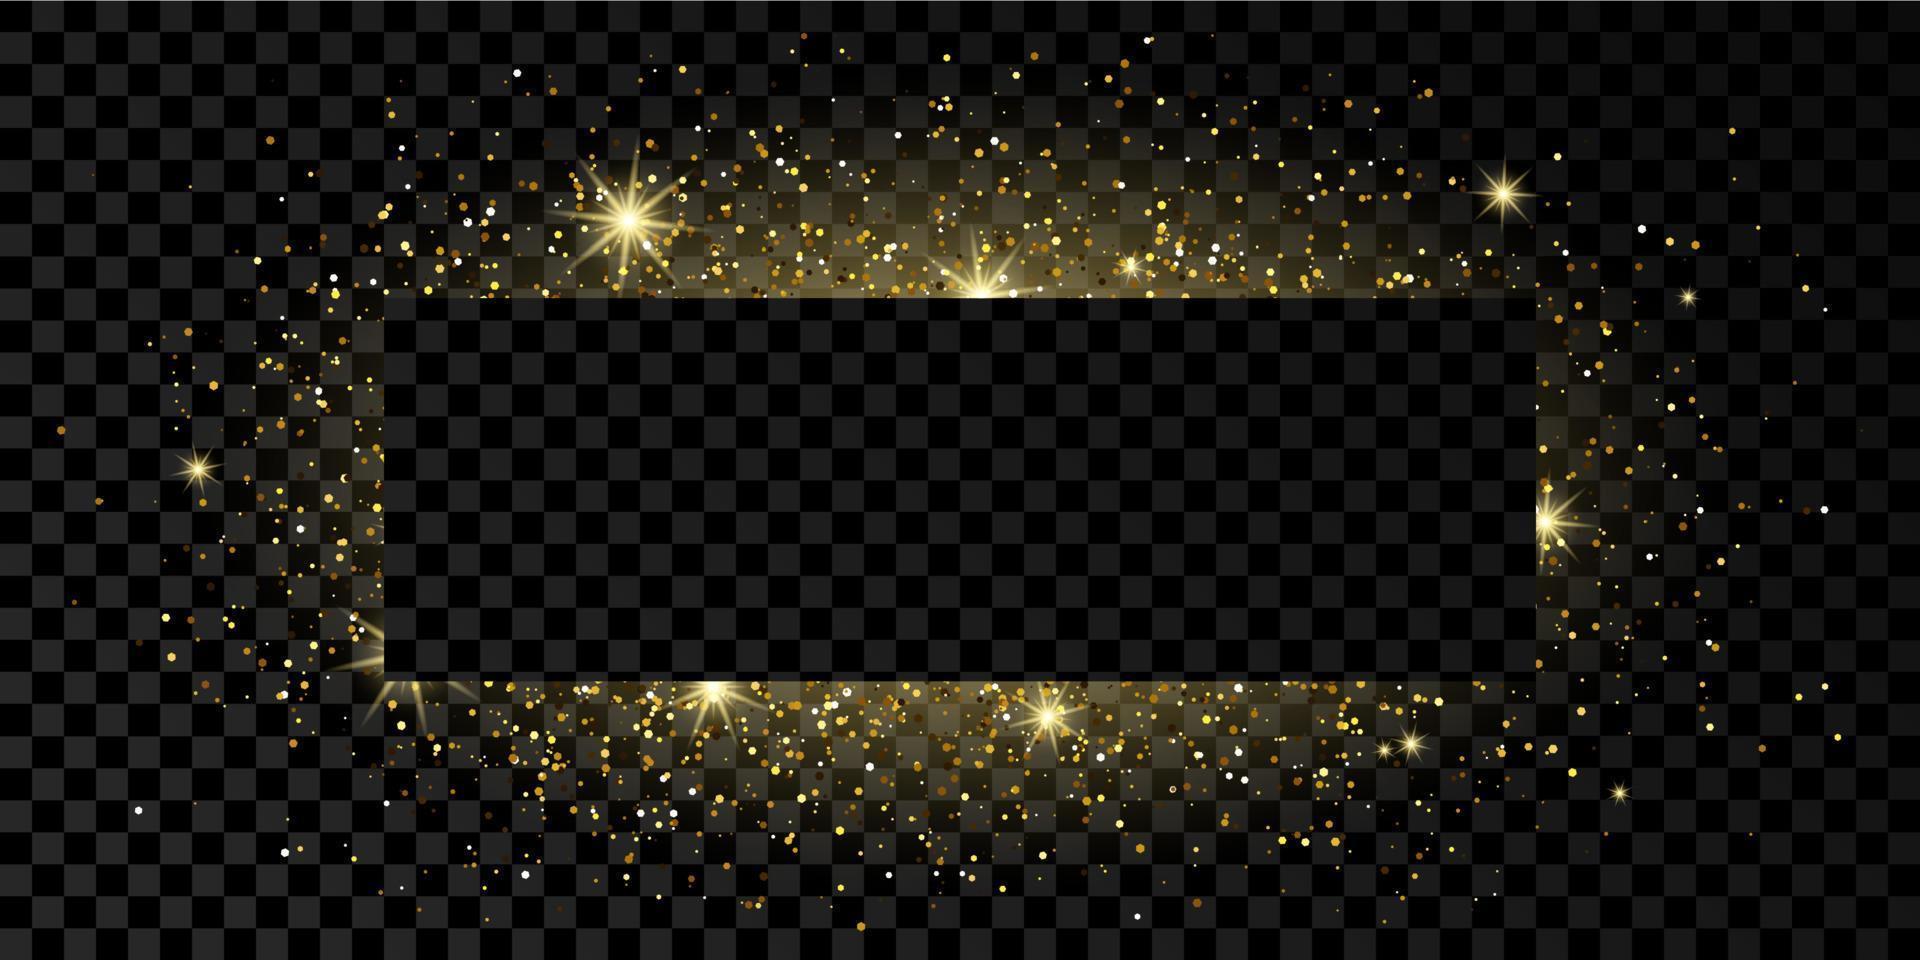 marco de rectángulo dorado con brillo, destellos y bengalas sobre fondo transparente oscuro. telón de fondo de lujo vacío. ilustración vectorial vector